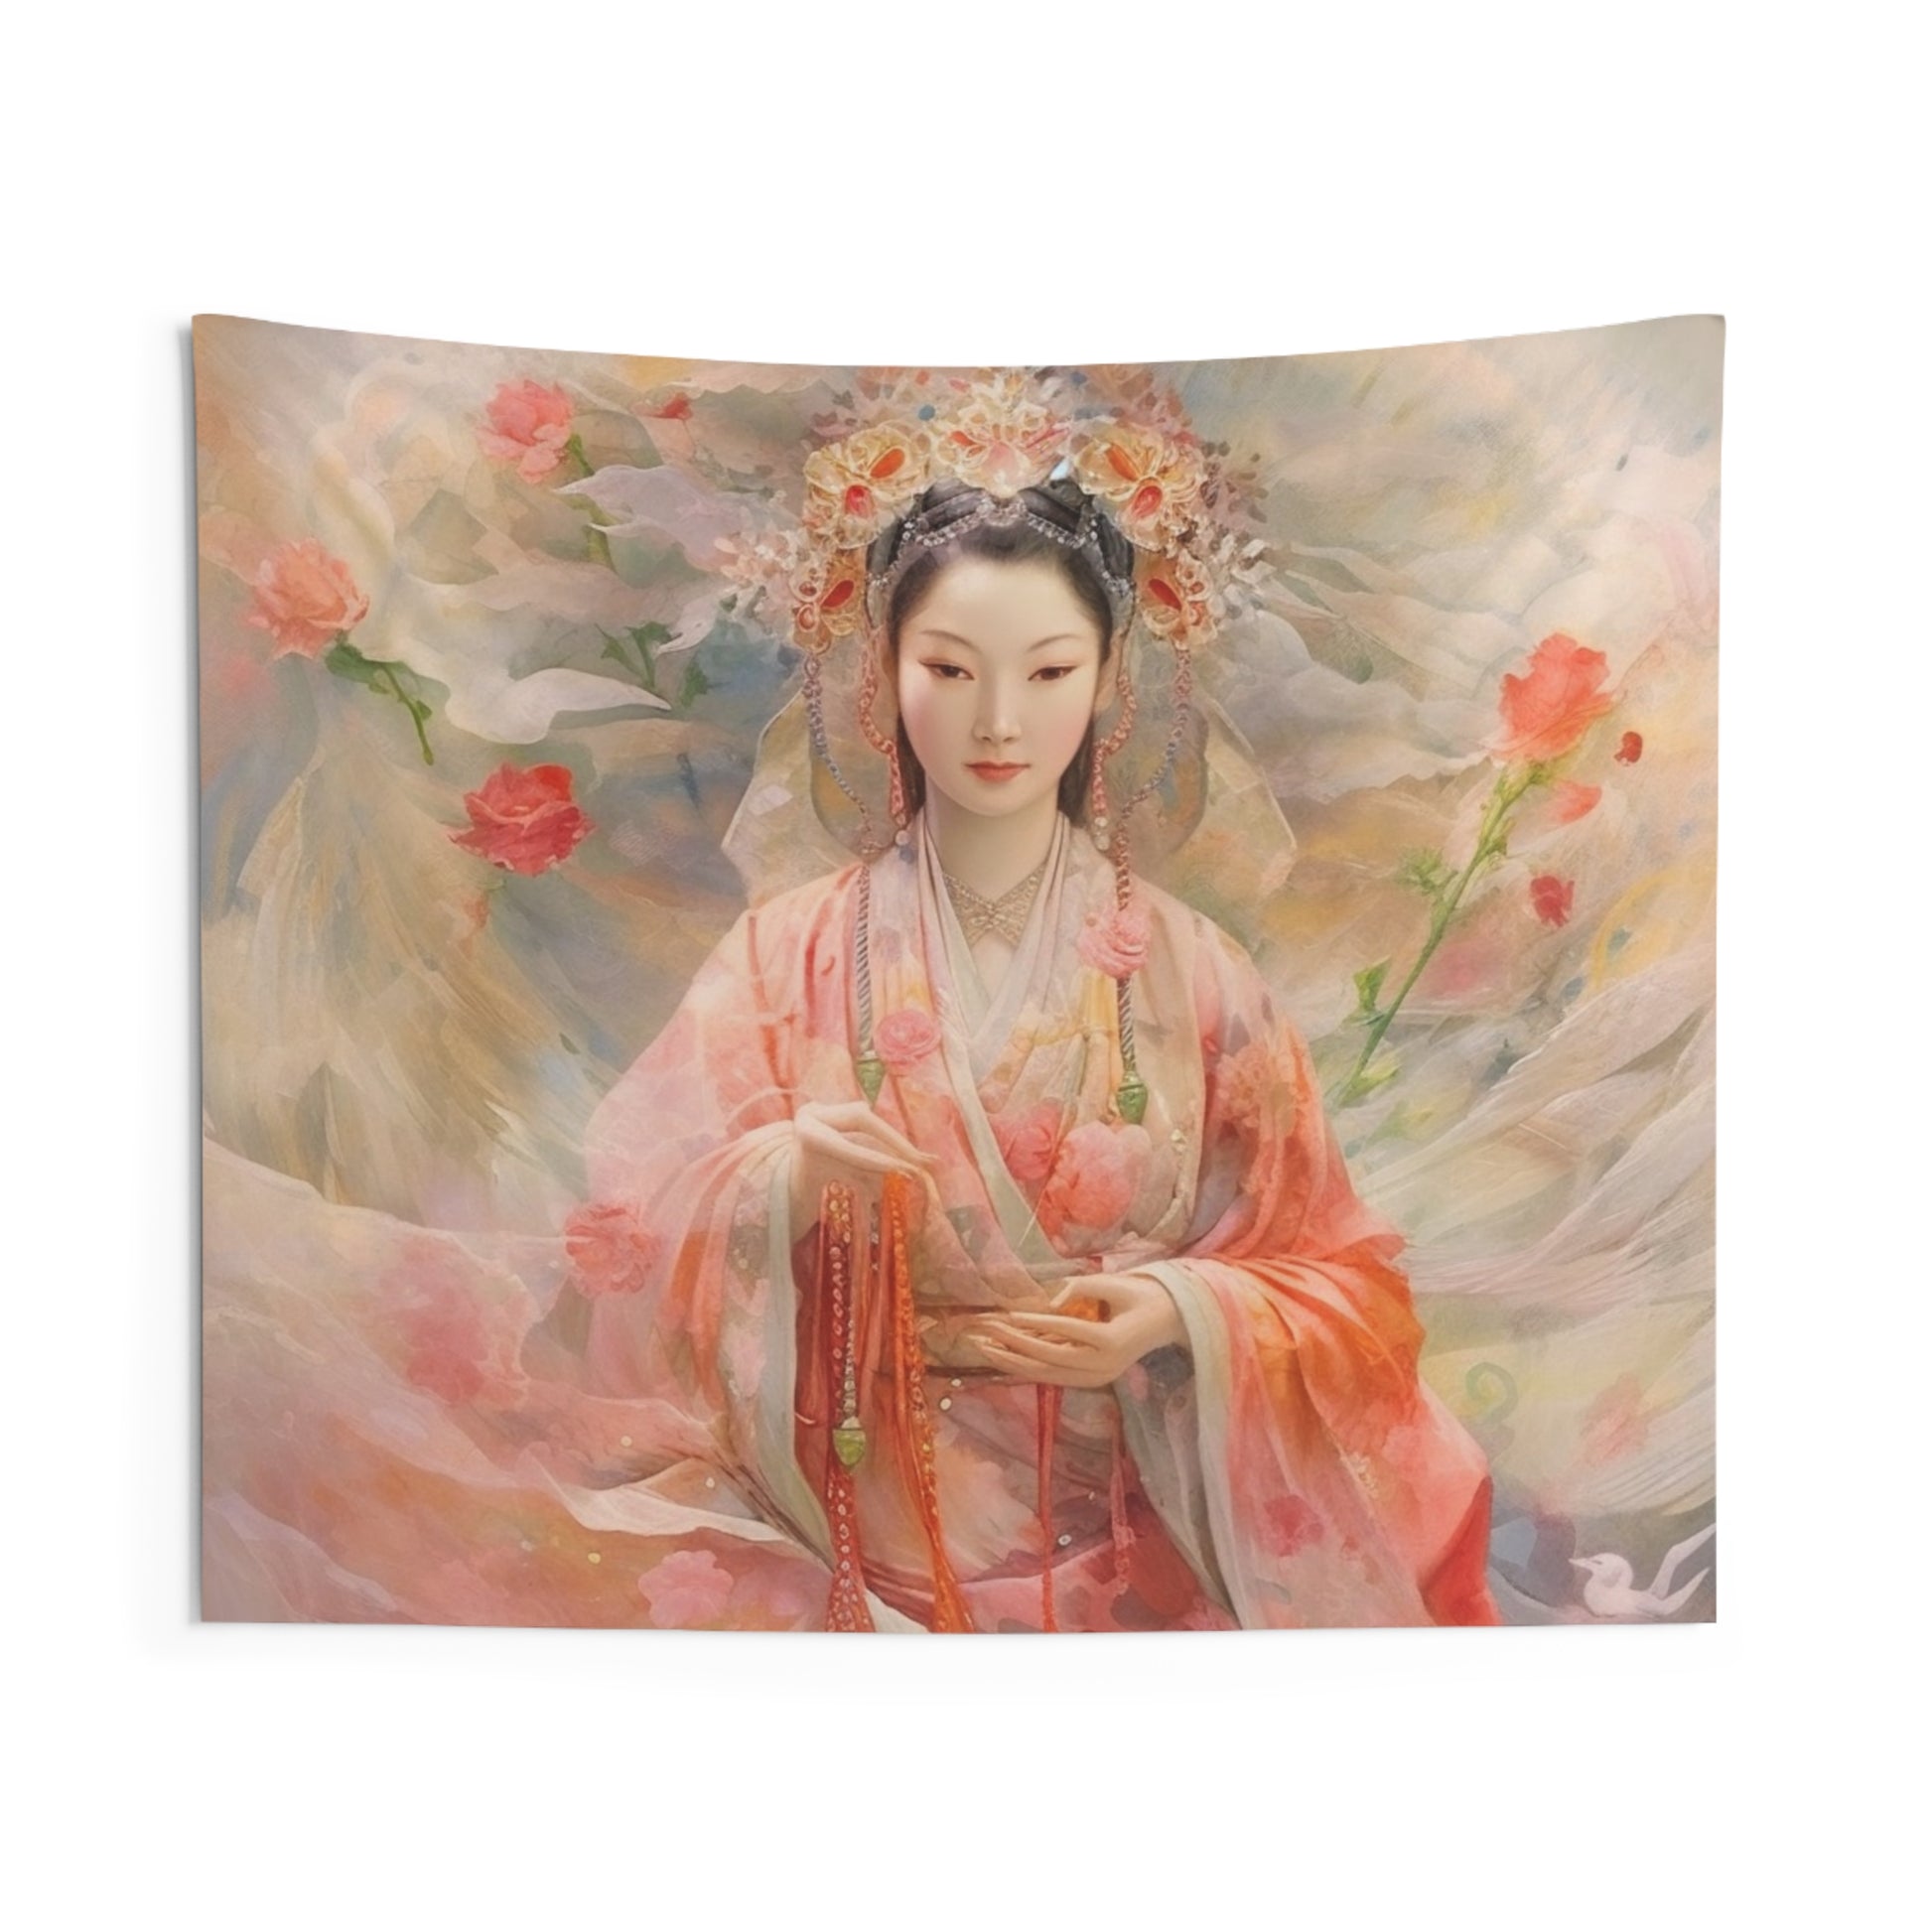 Quan Yin Wall Tapestry - Guan Yin, Kwan Yin, Goddess of Compassion - Spiritual Wall Decor for Buddhism Home Decor 60" × 50"  